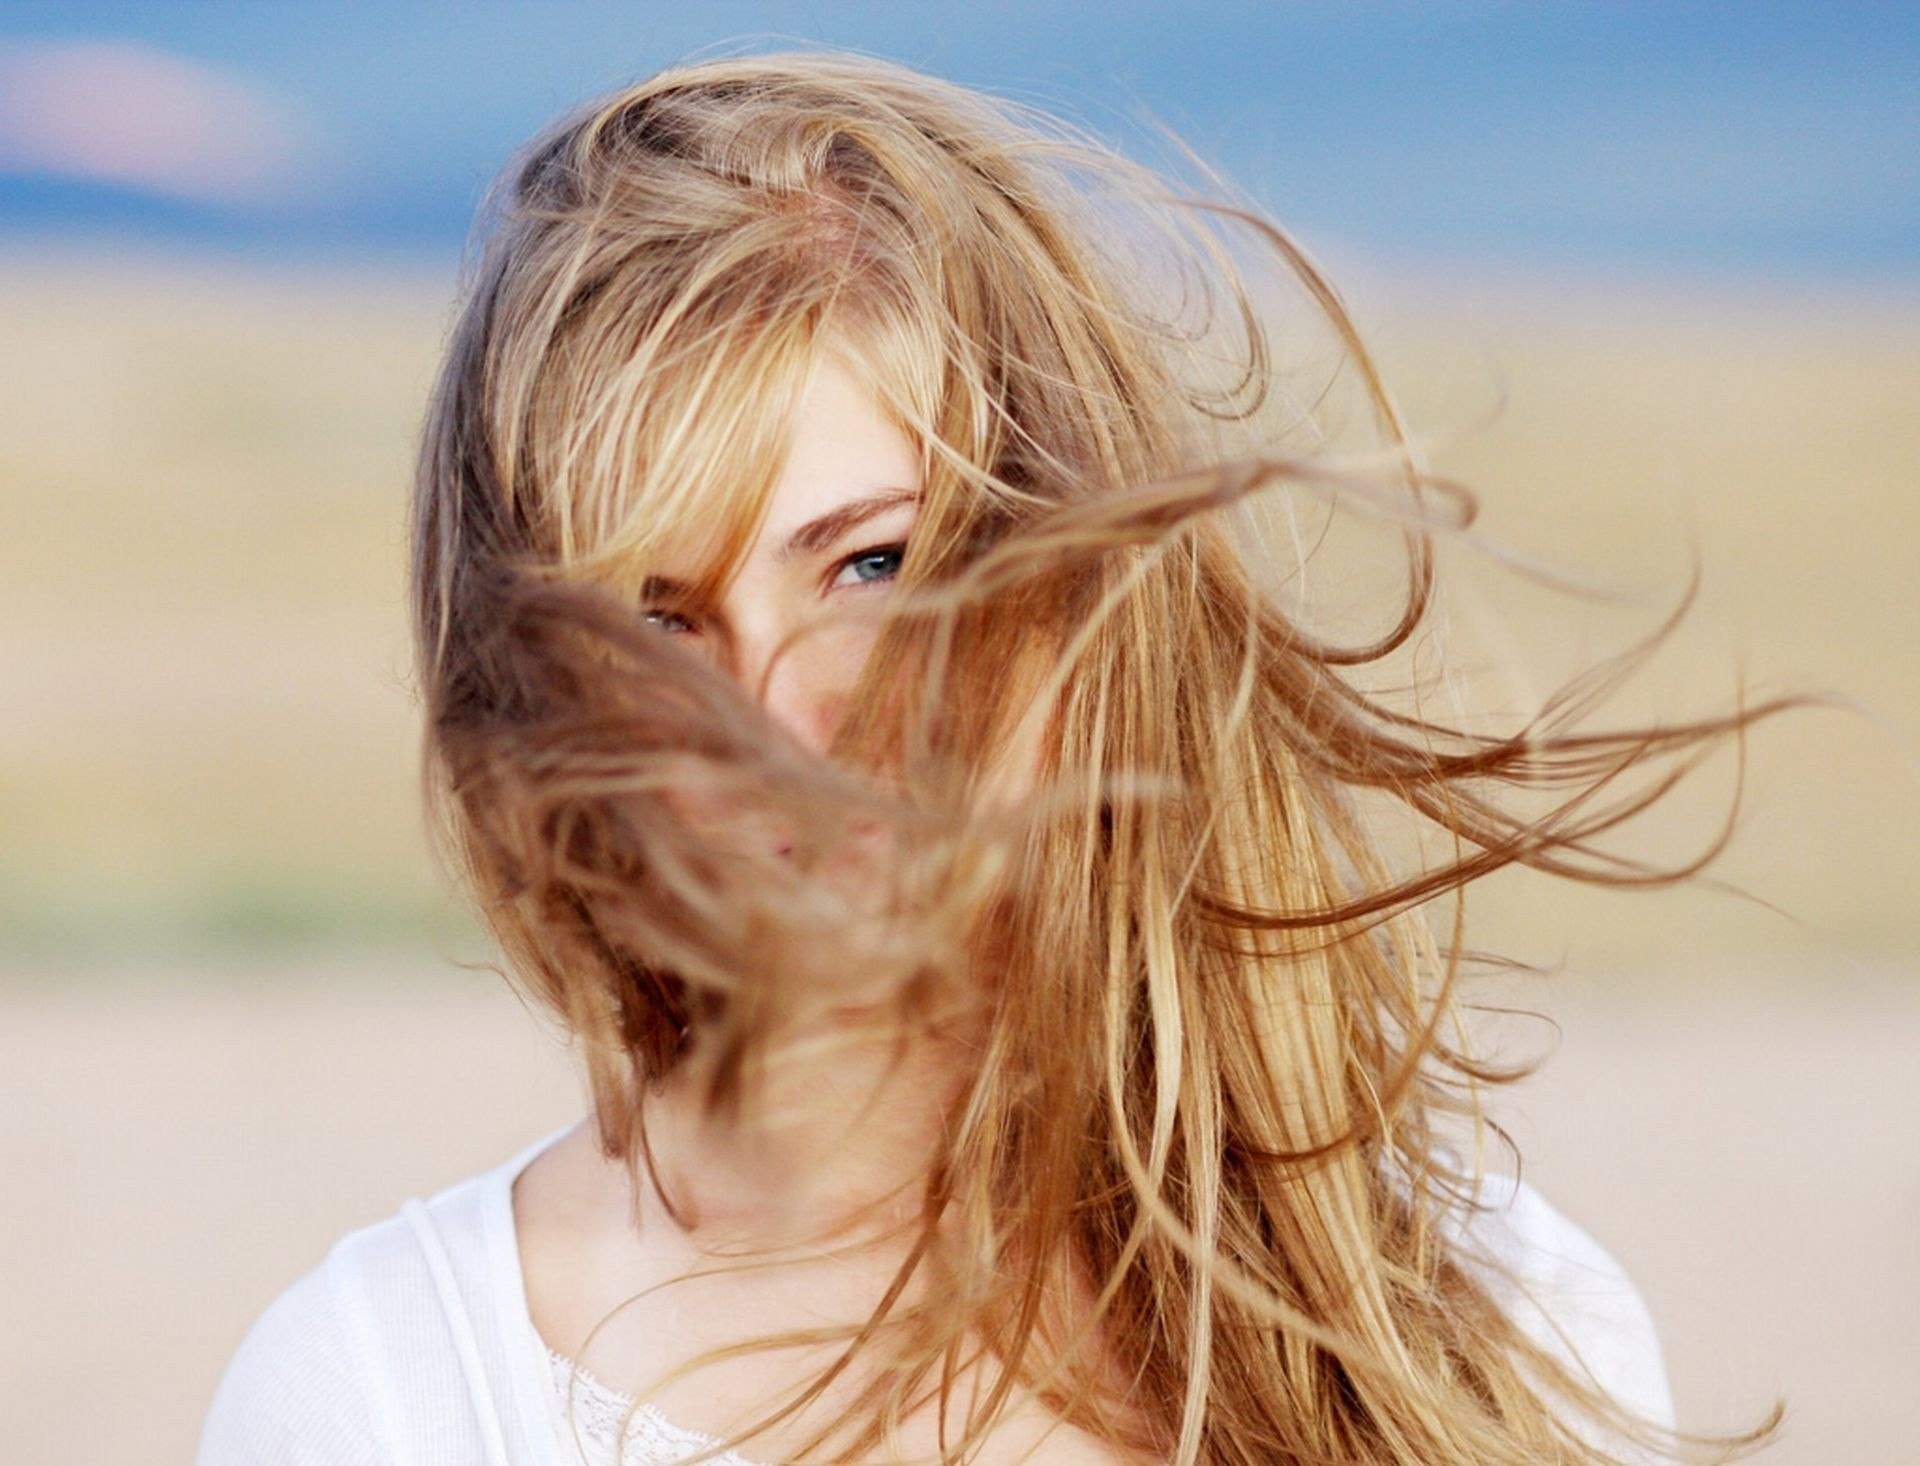 Давай светлые волосы. Девушка с развевающимися волосами. Развивающиеся волосы. Девушка волосы на ветру. Девушка с распущенными волосами на ветру.